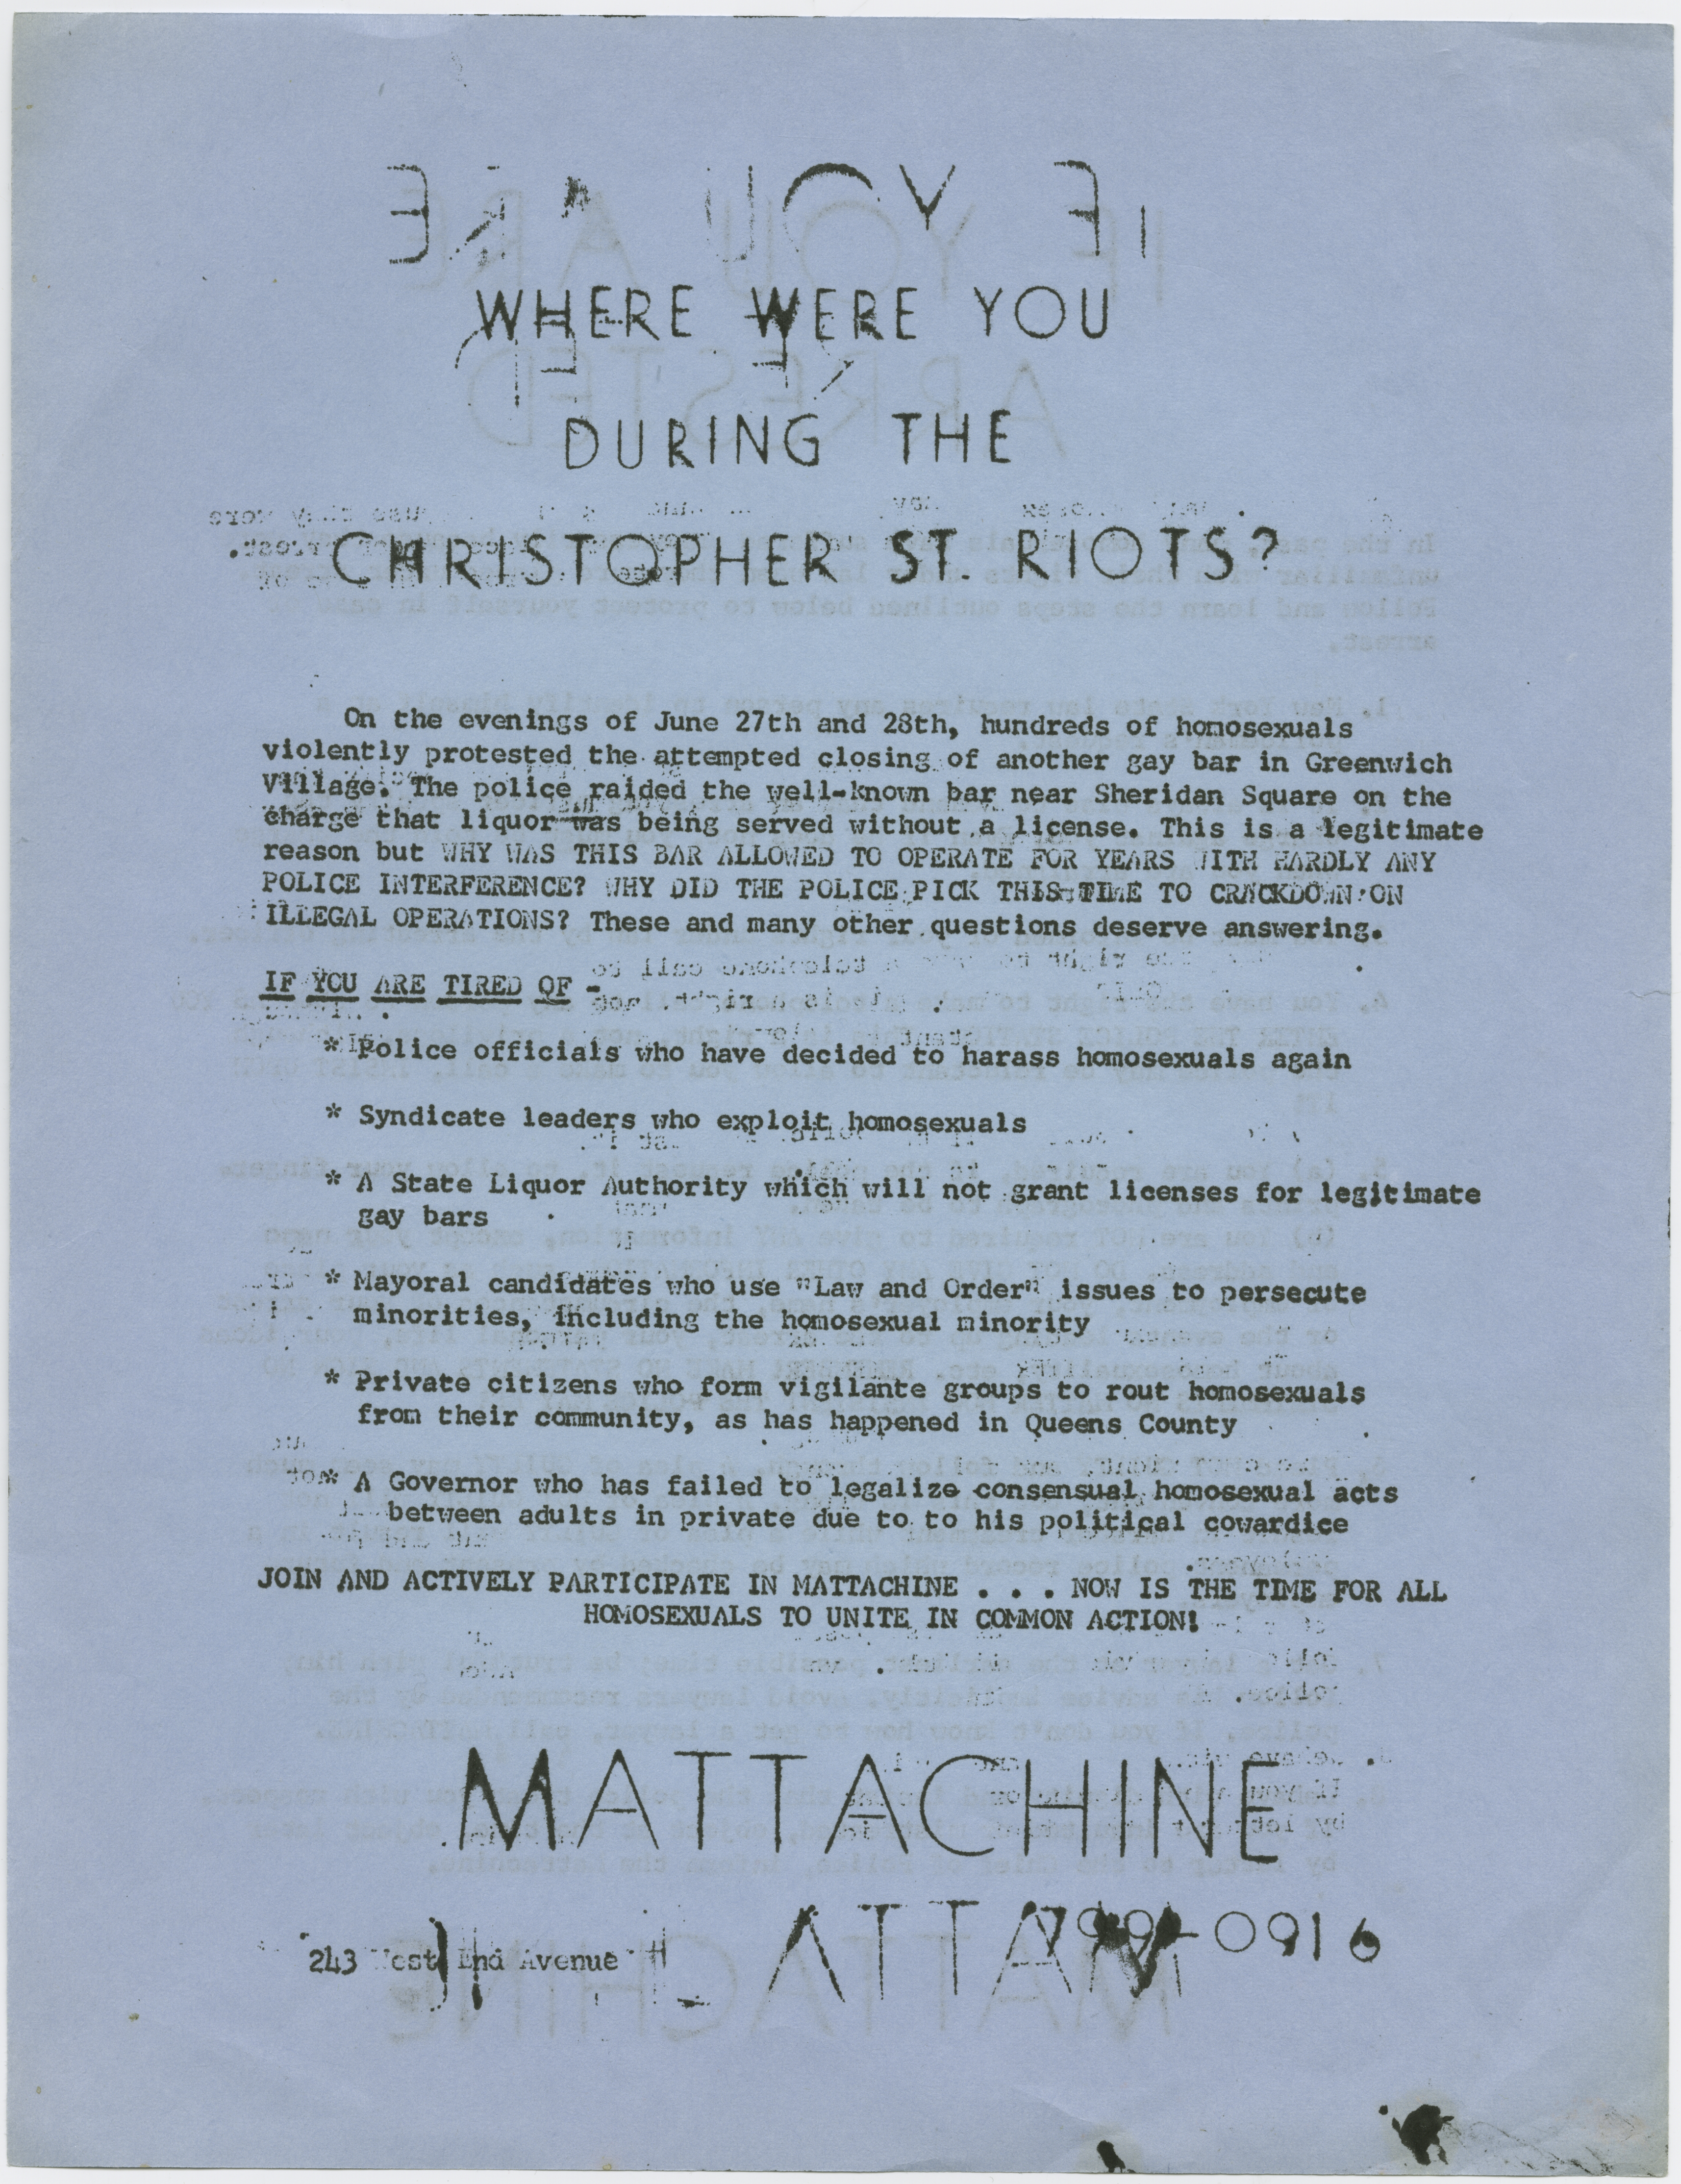 Mattachine Society, Inc. of New York. 